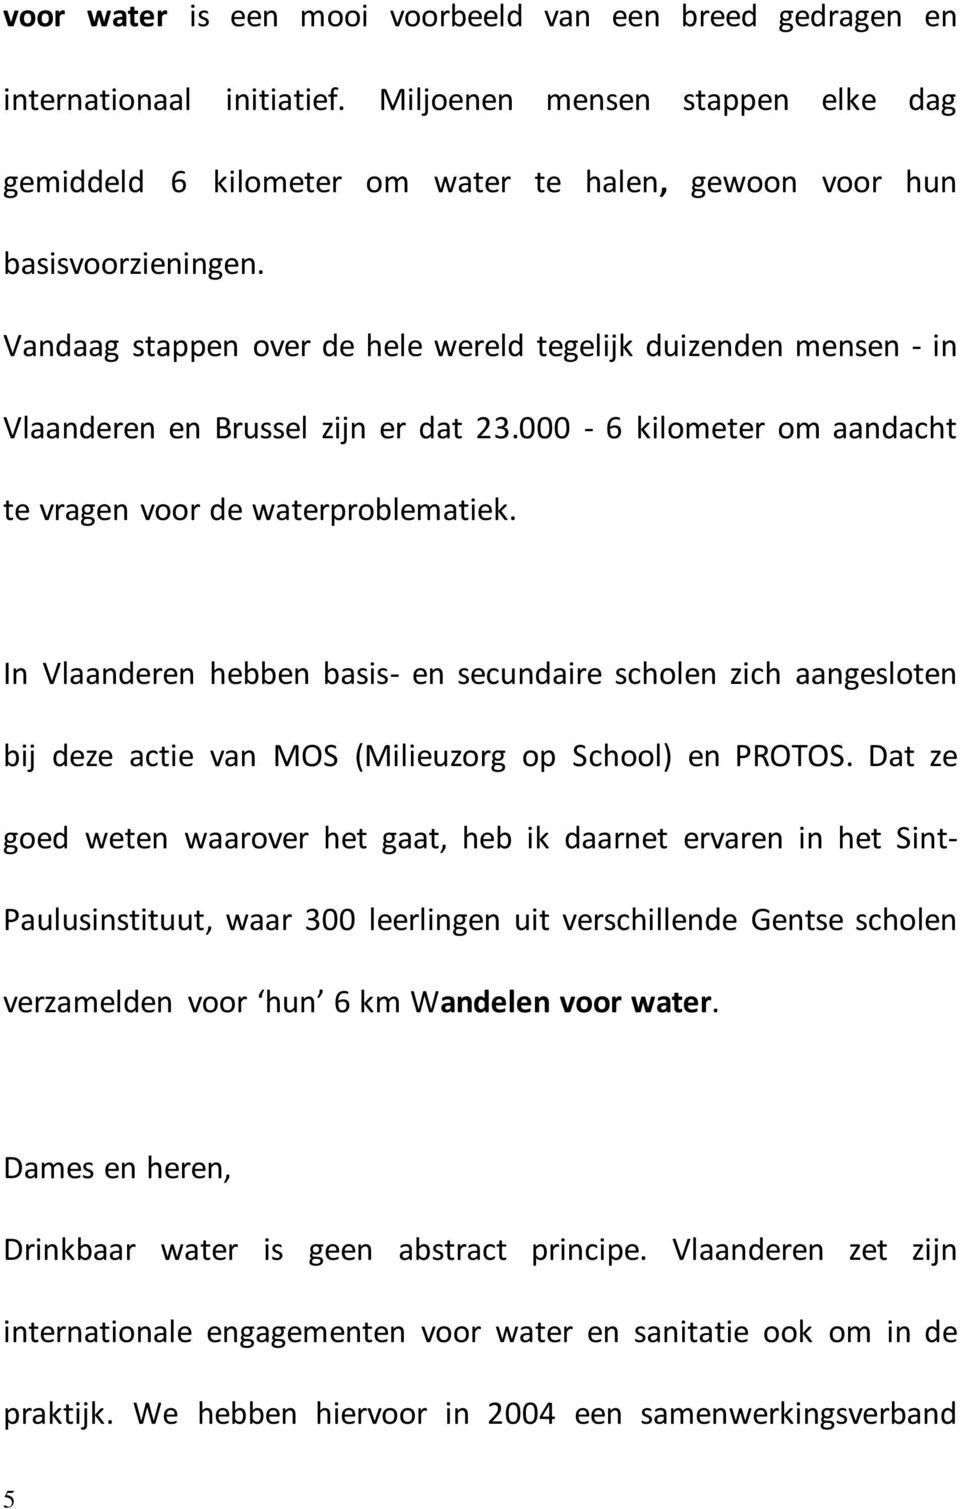 In Vlaanderen hebben basis- en secundaire scholen zich aangesloten bij deze actie van MOS (Milieuzorg op School) en PROTOS.